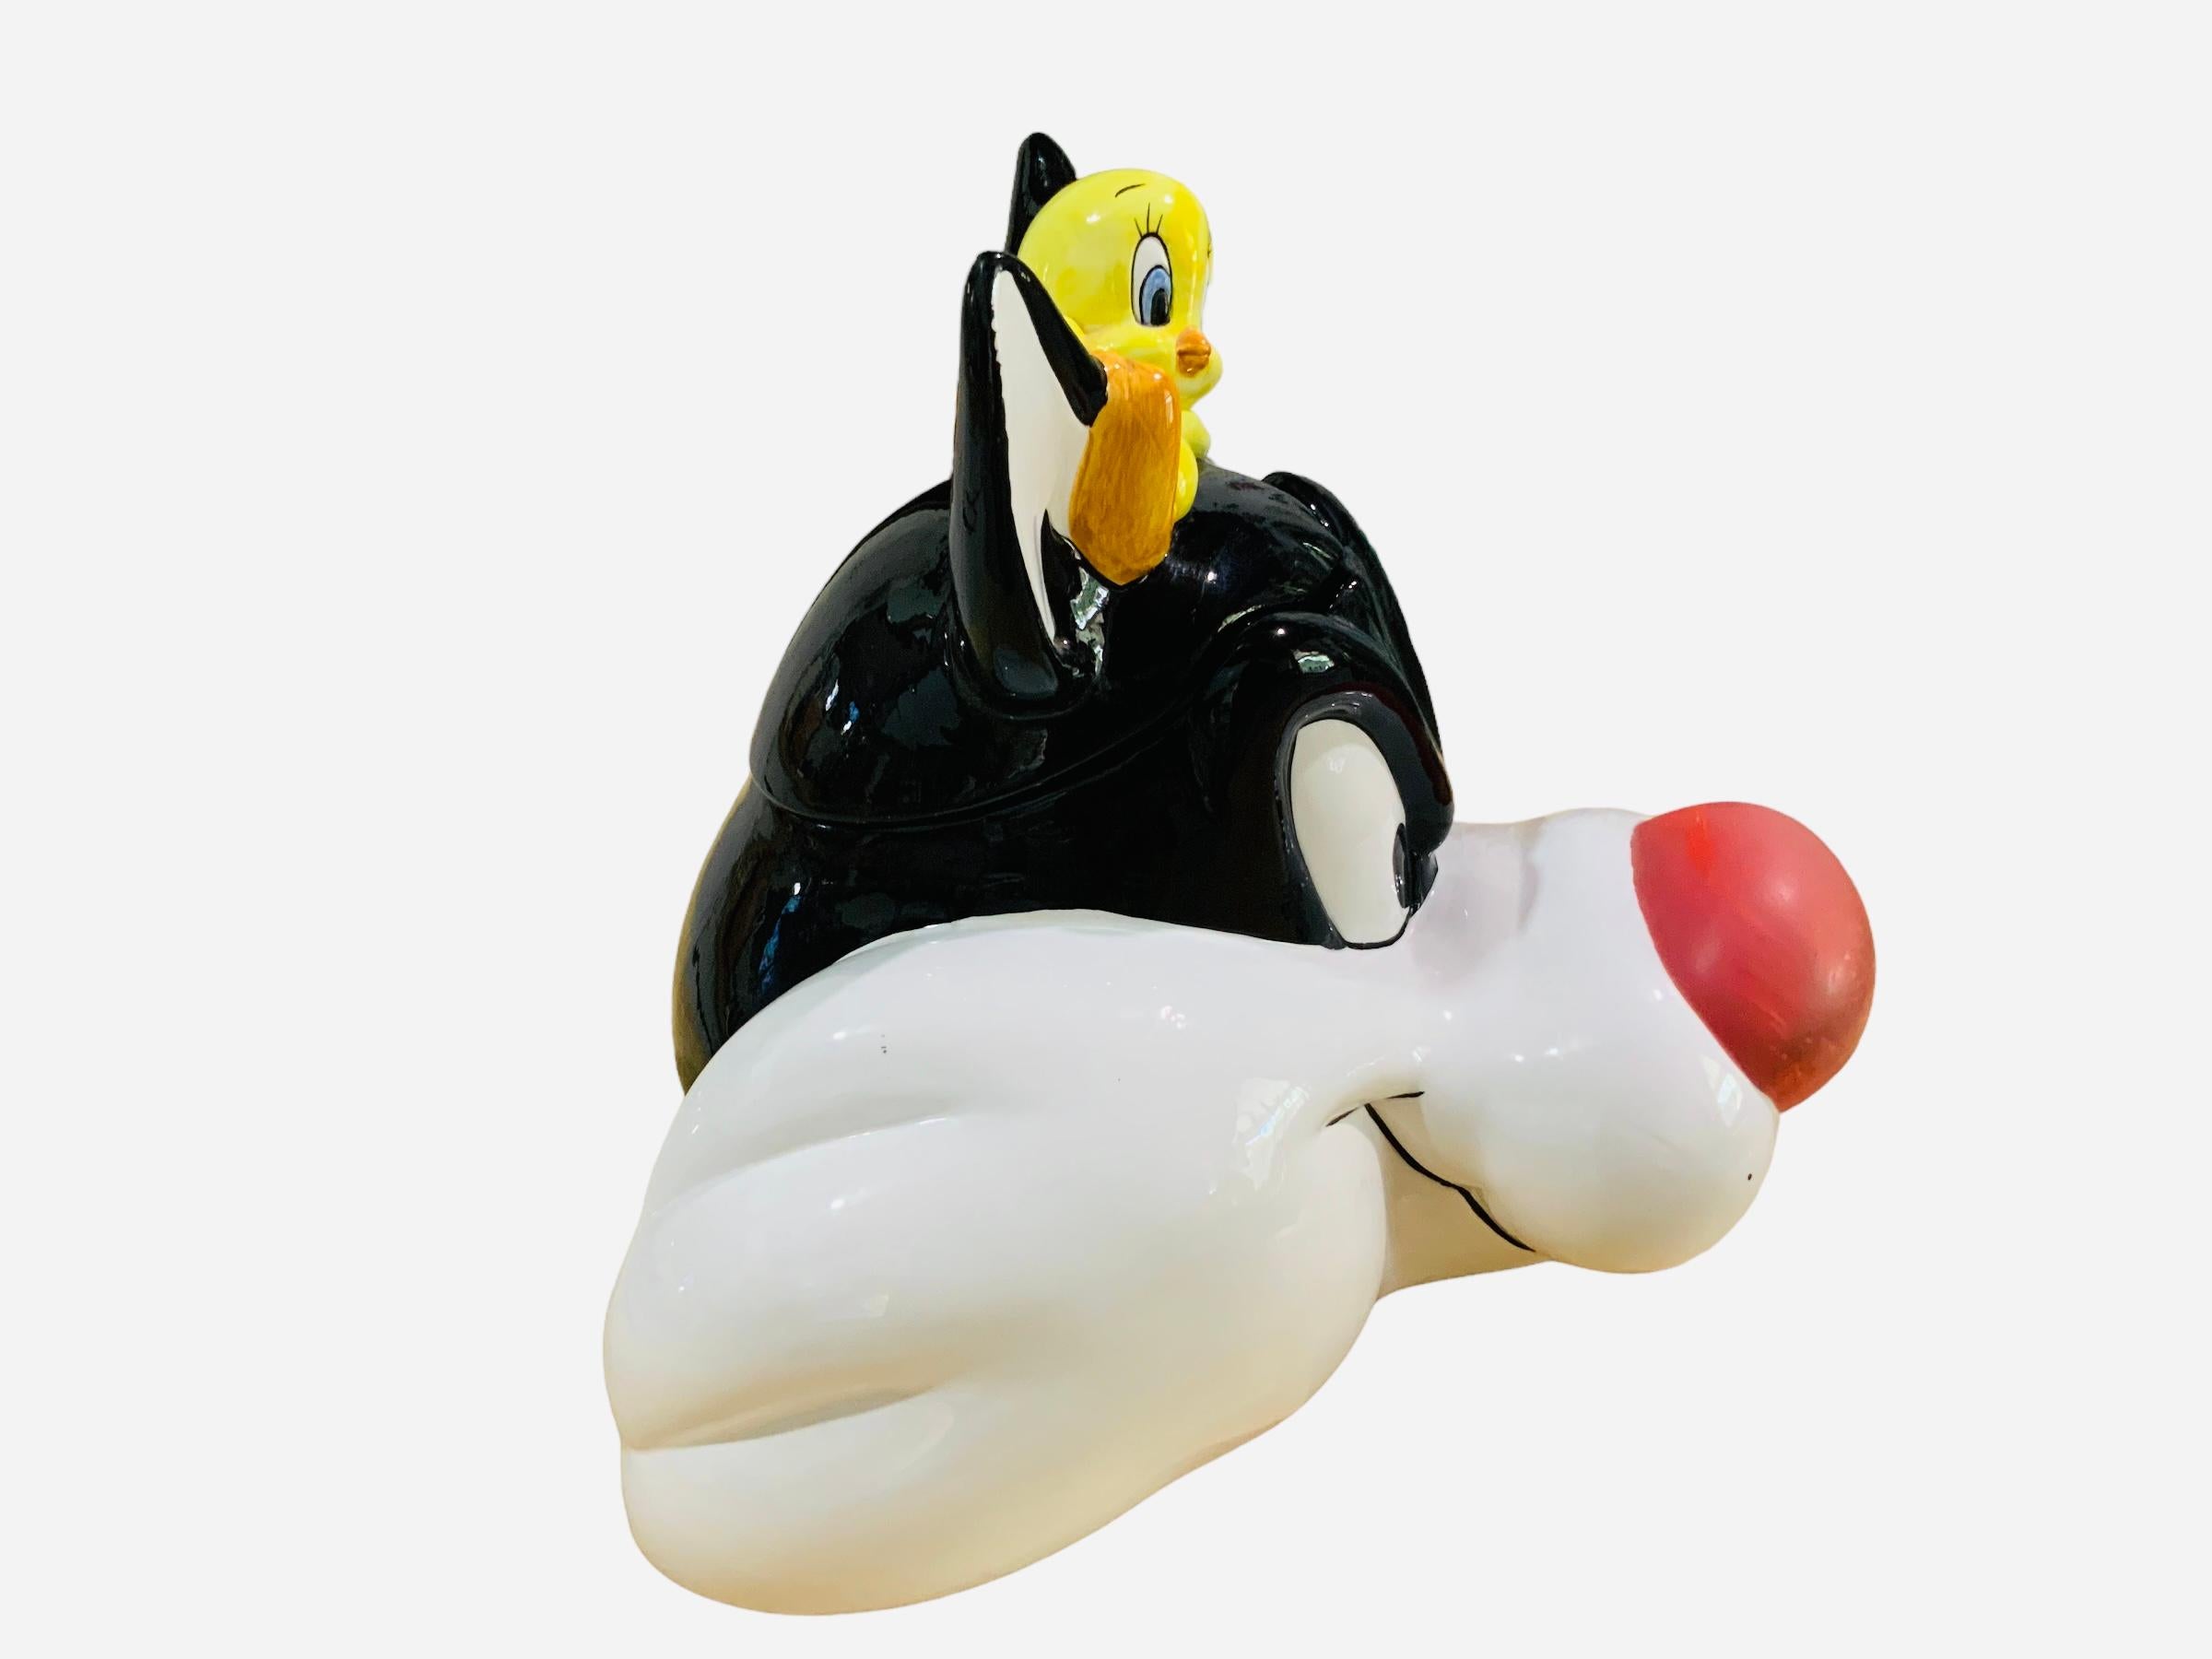 Dies ist eine Sylvester und Tweety Vogel Keksdose. Es zeigt eine handbemalte, glasierte Keramik-Keksdose in Form des Kopfes von Sylvester und Tweety Bird, der darüber liegt. Unterhalb des Sockels ist Applause, Inc. gestempelt; Warner Bros. Looney